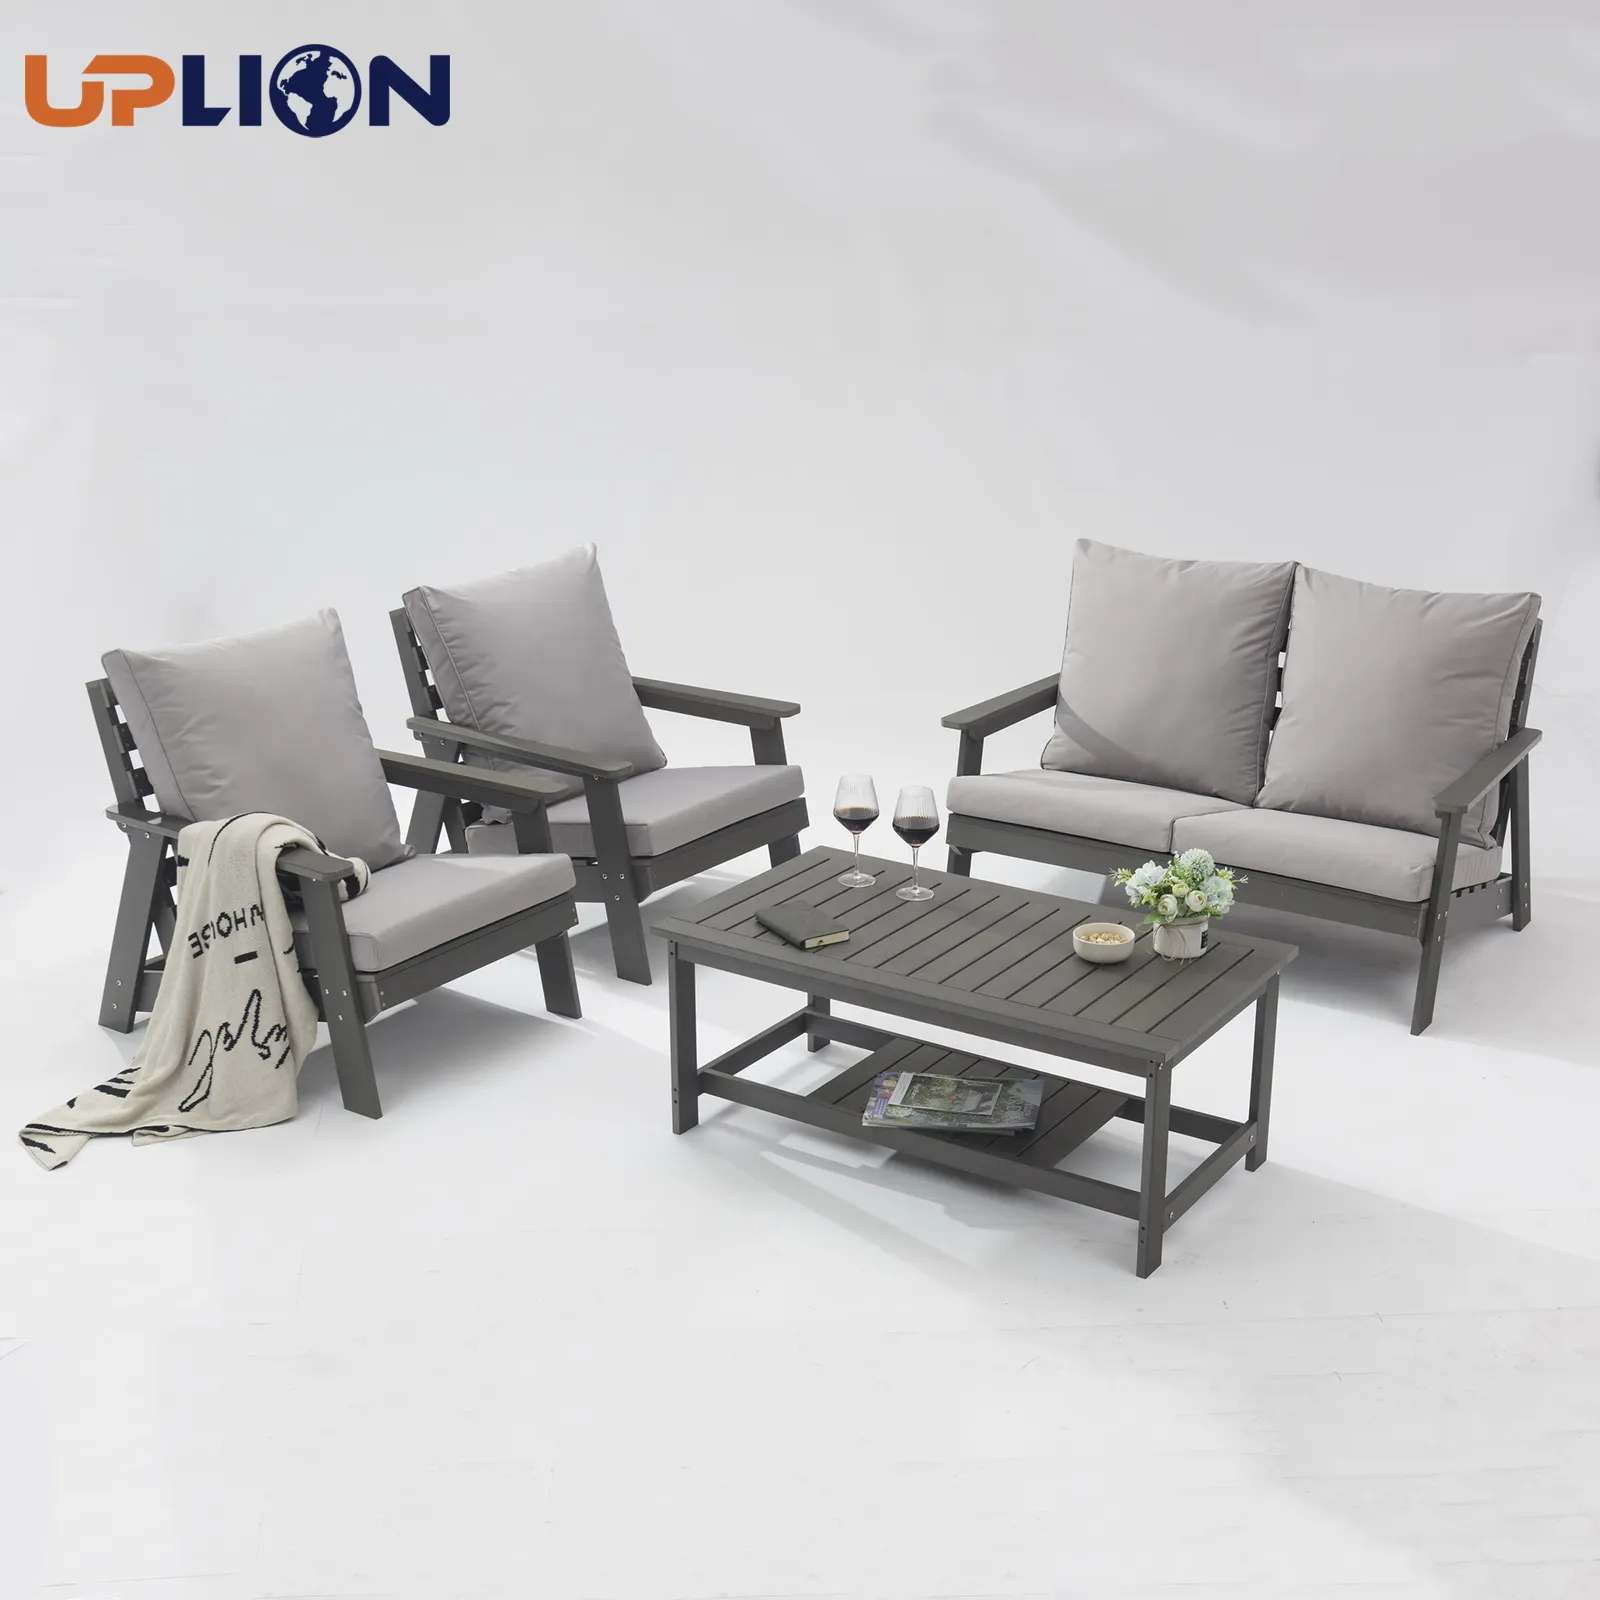 Uplion أثاث خارجي للماء حديقة مجموعة مقاعد الطاولة الفناء البلاستيك مجموعة أريكة خشبية